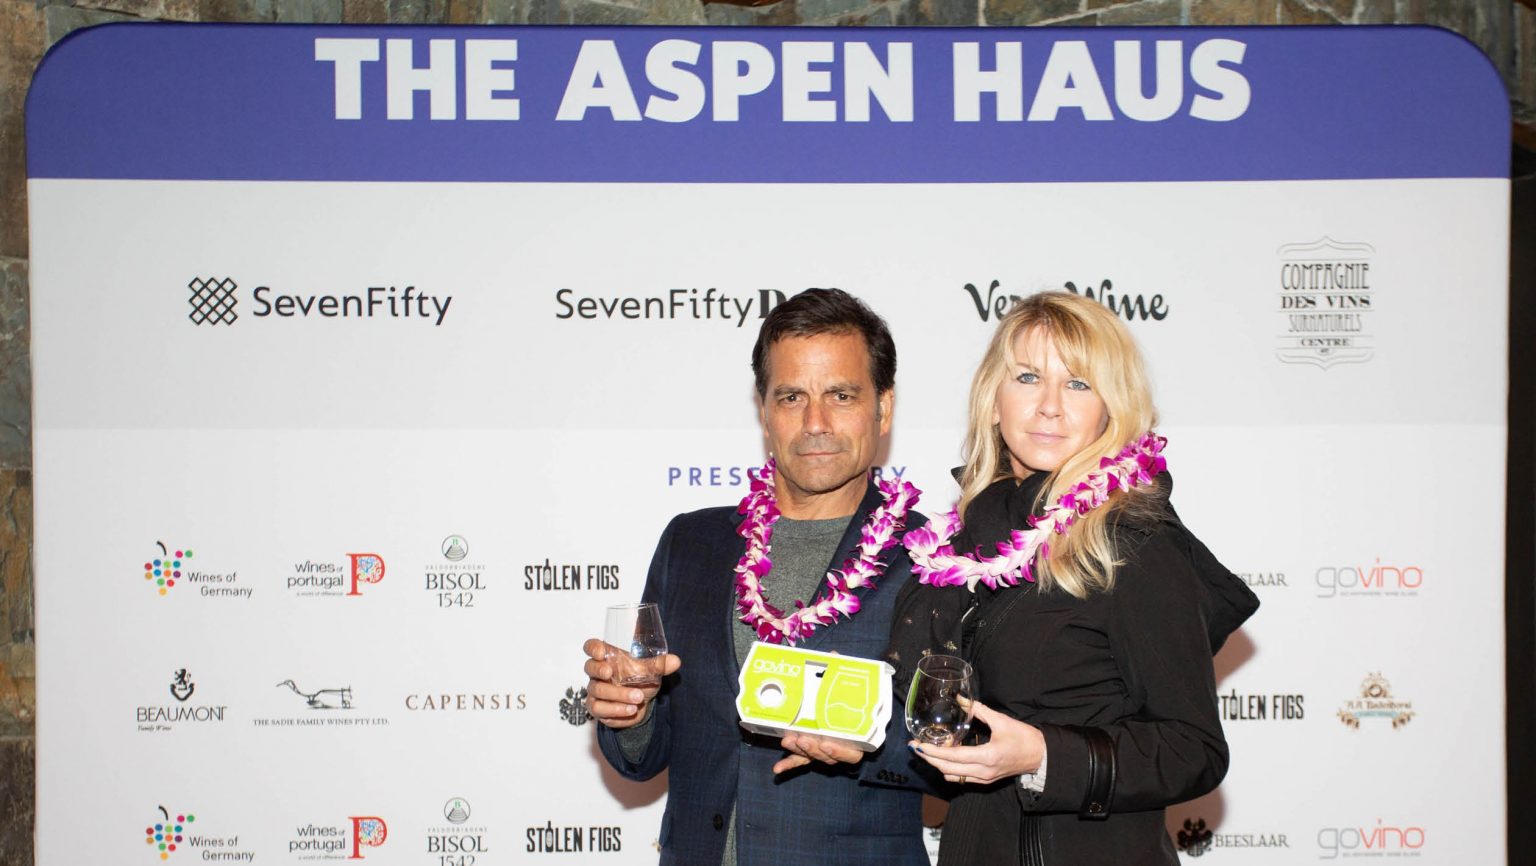 SevenFifty Aspen Haus 2019